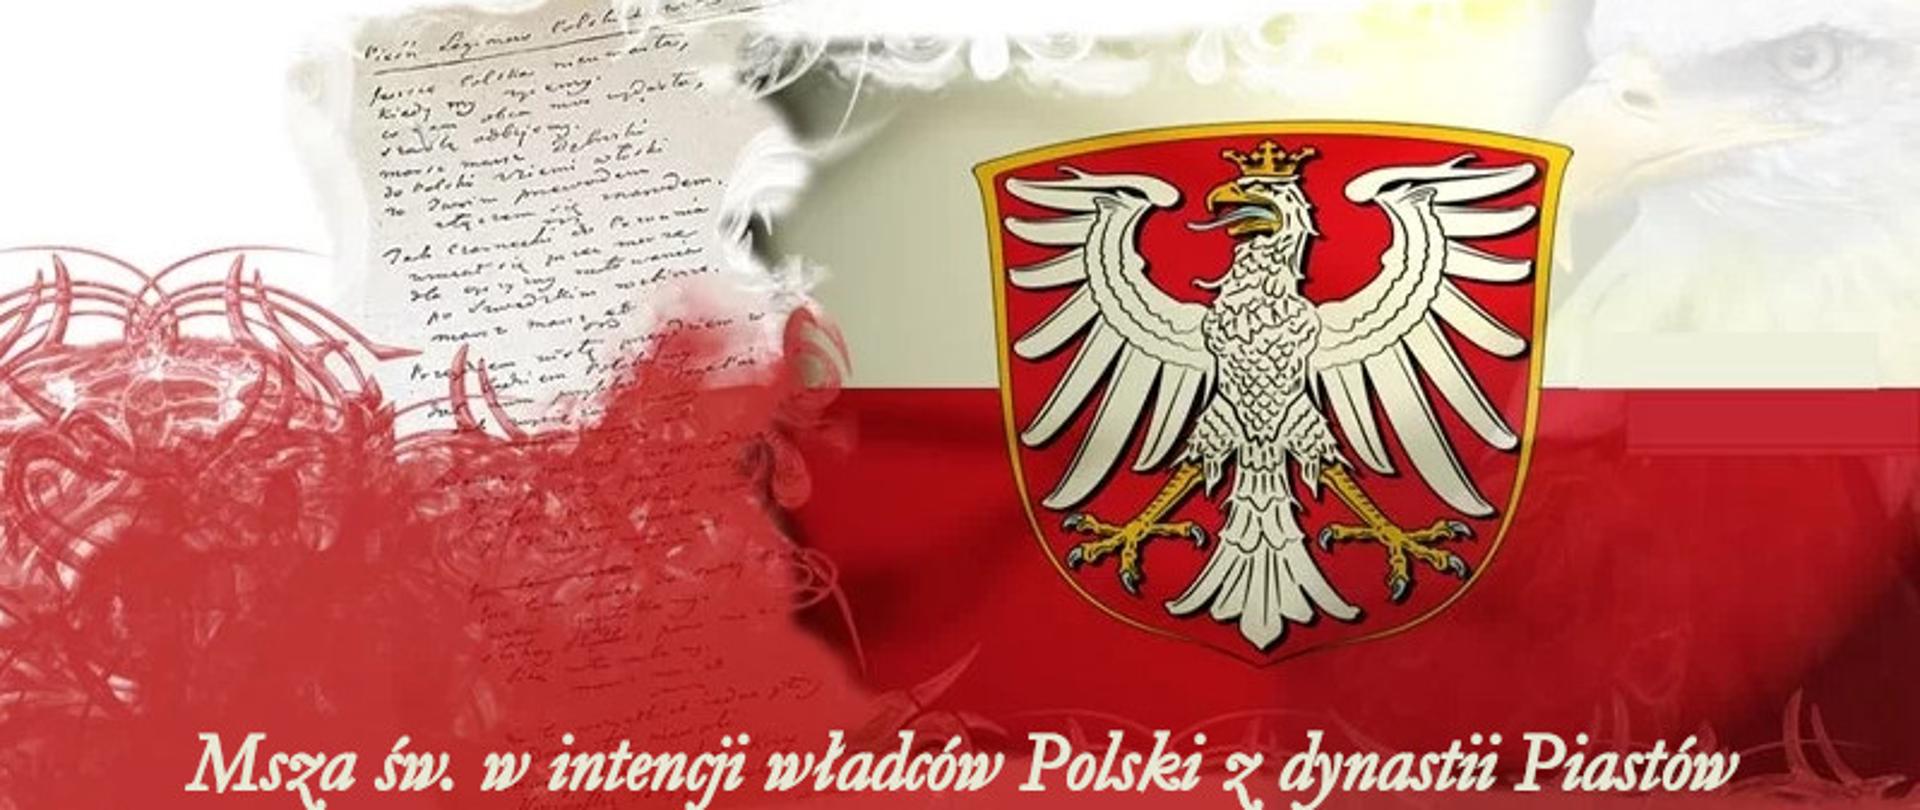 na biało czerwonym tle widoczny orzeł dynastii piastów oraz napis Msza Św. w intencji władców Polski z dynastii Piastów